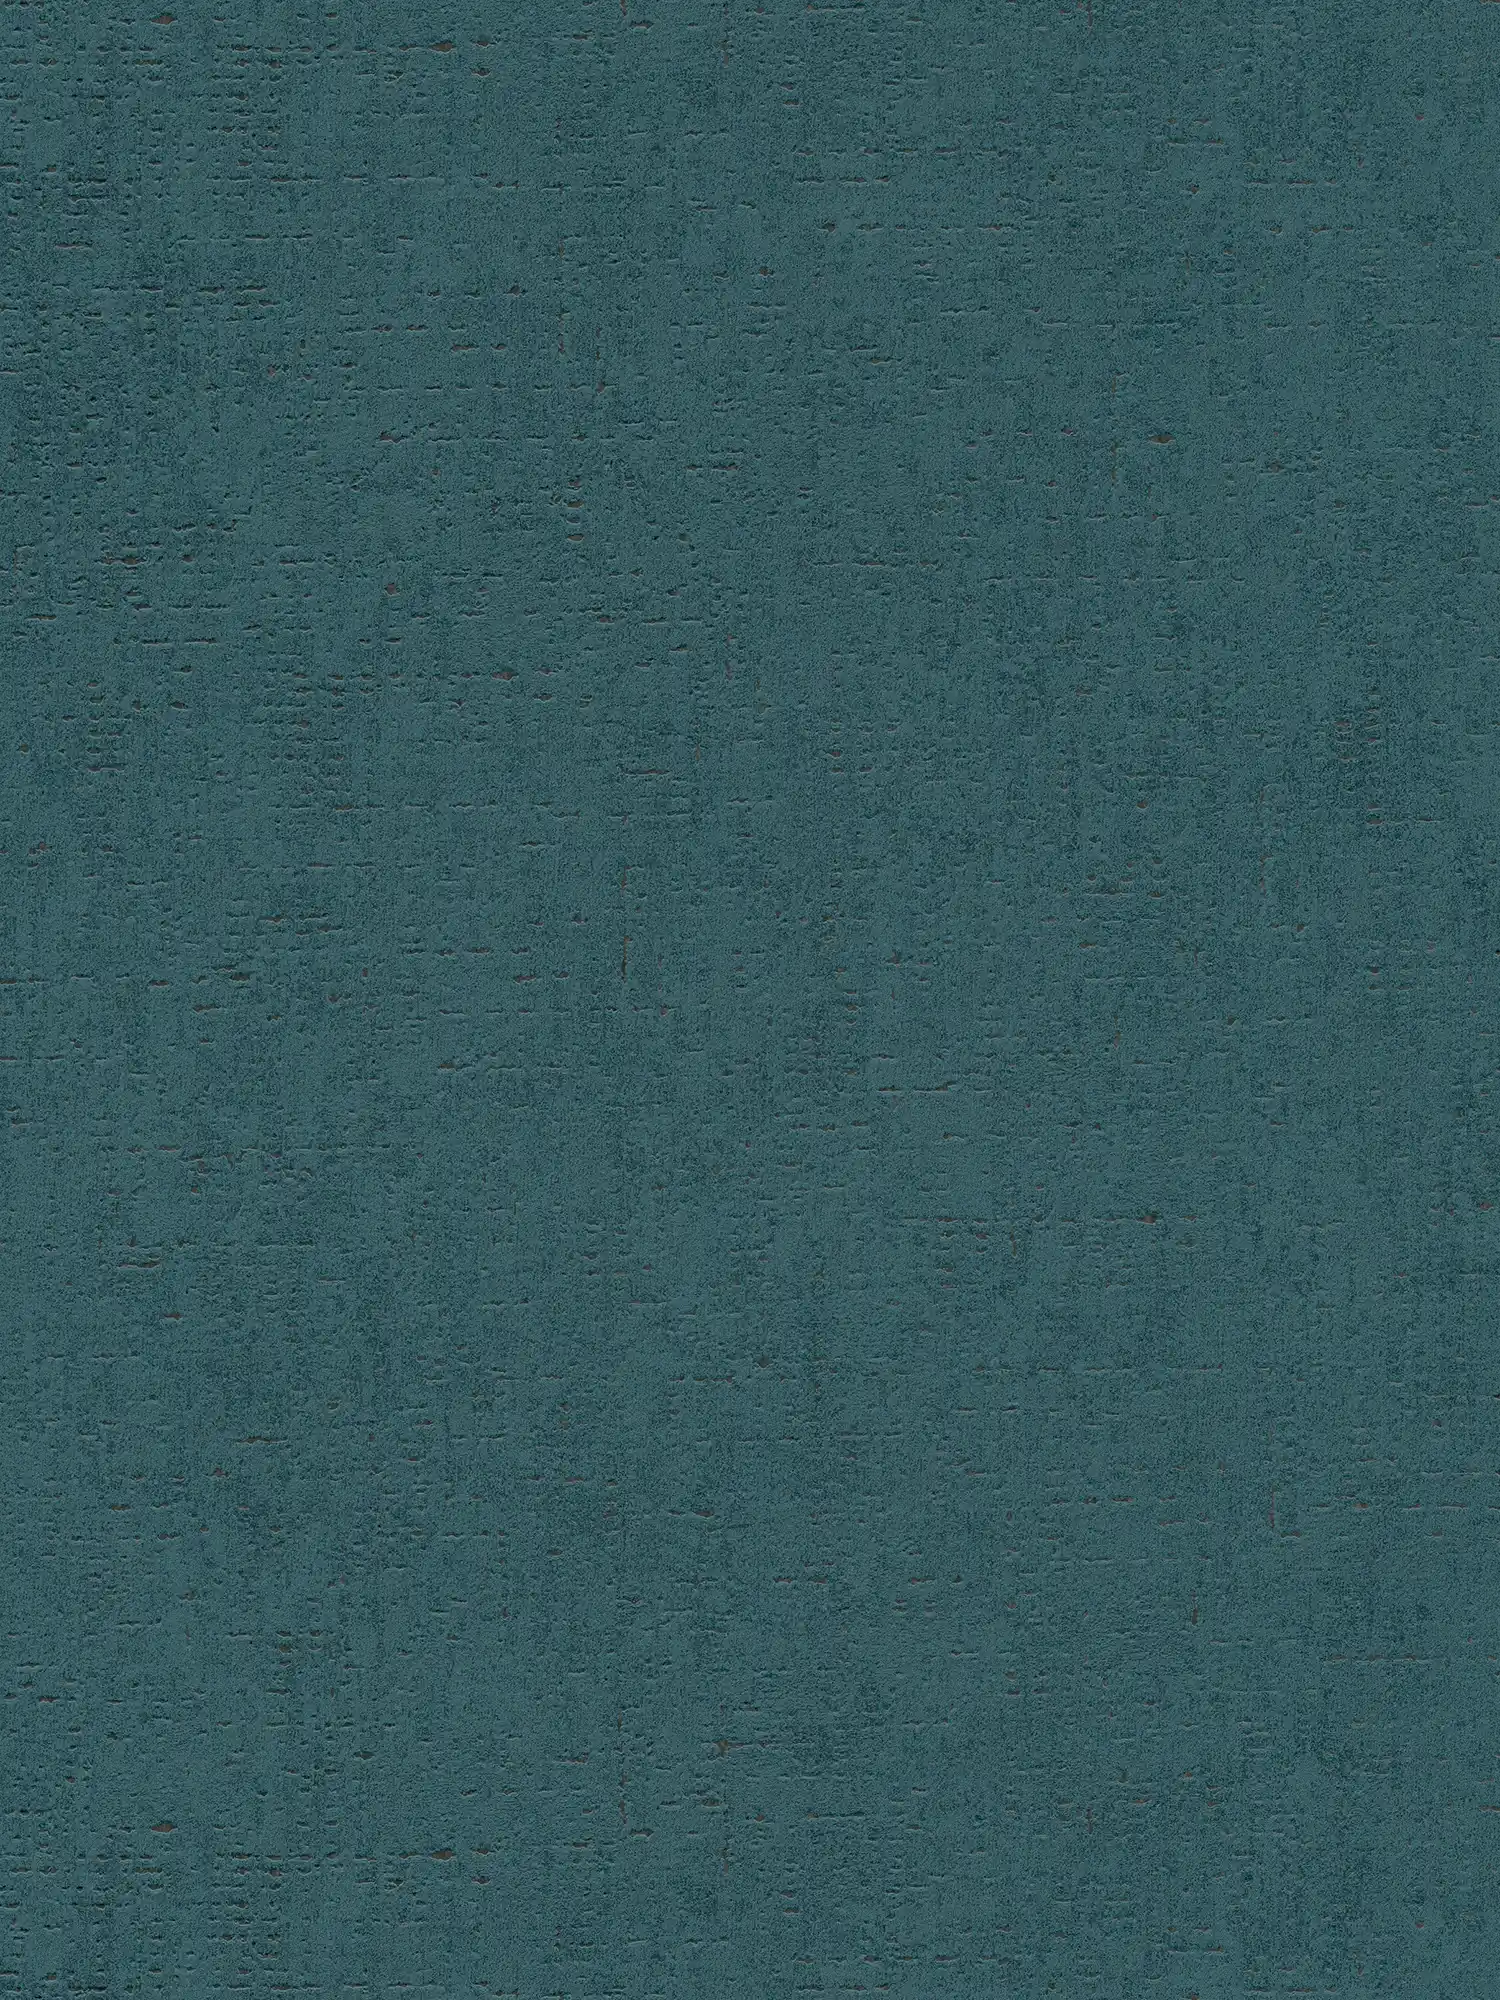 Petrolkleurig behang met gevlekte structuur - blauw, groen
